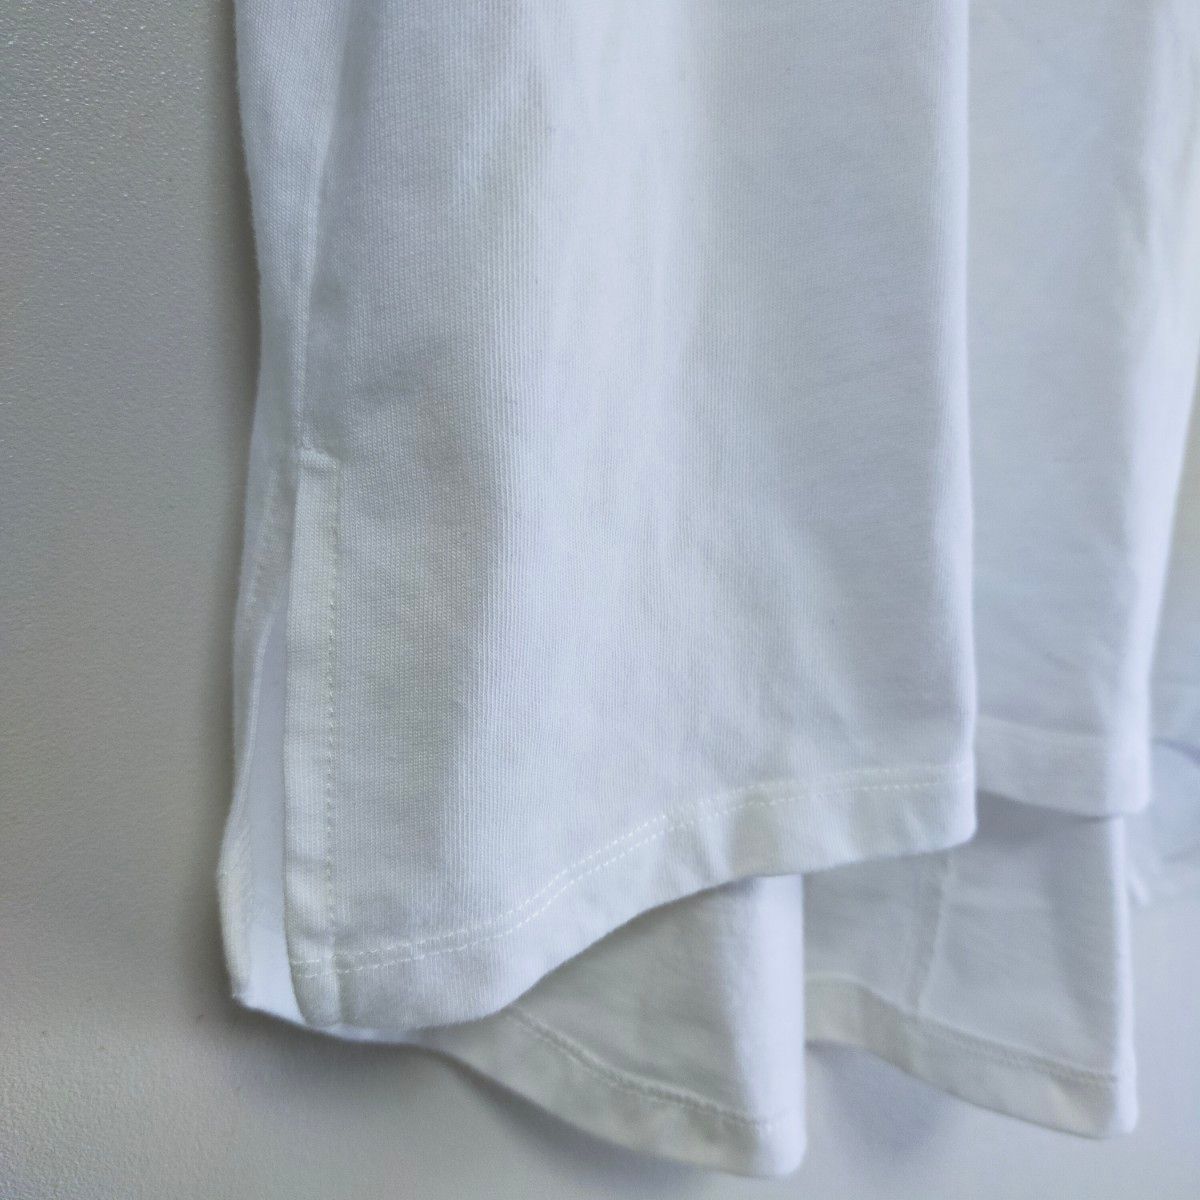 美品☆LAKOLE/ラコレ　半袖　Tシャツ　カットソー　ブラウス　レディース　S  ホワイト 白 半袖Tシャツ 綿 コットン